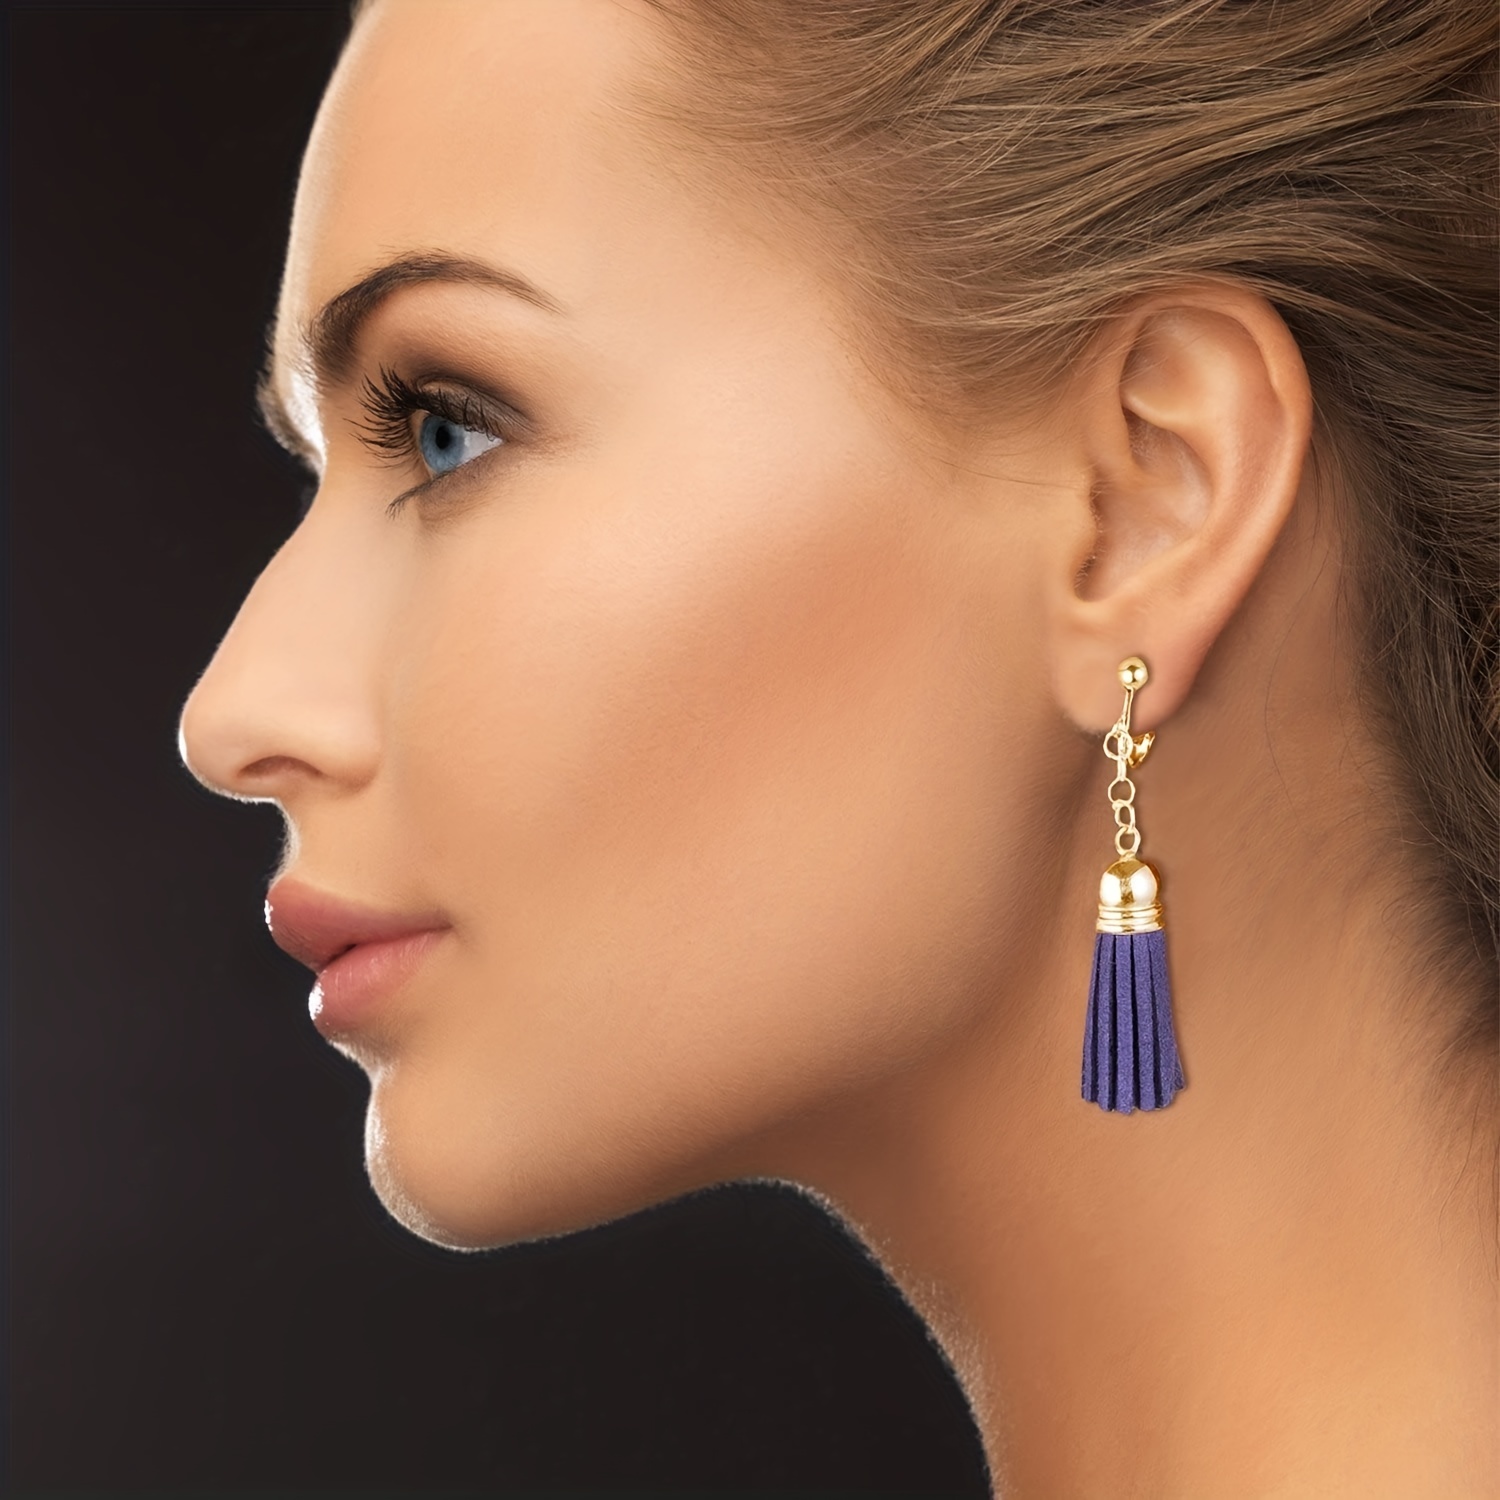 Clip on Earrings Converters, Pierced Earrings to Clip Earrings, Comfortable  Convertible Earrings Converters, Gold, Silver, No Piercing 